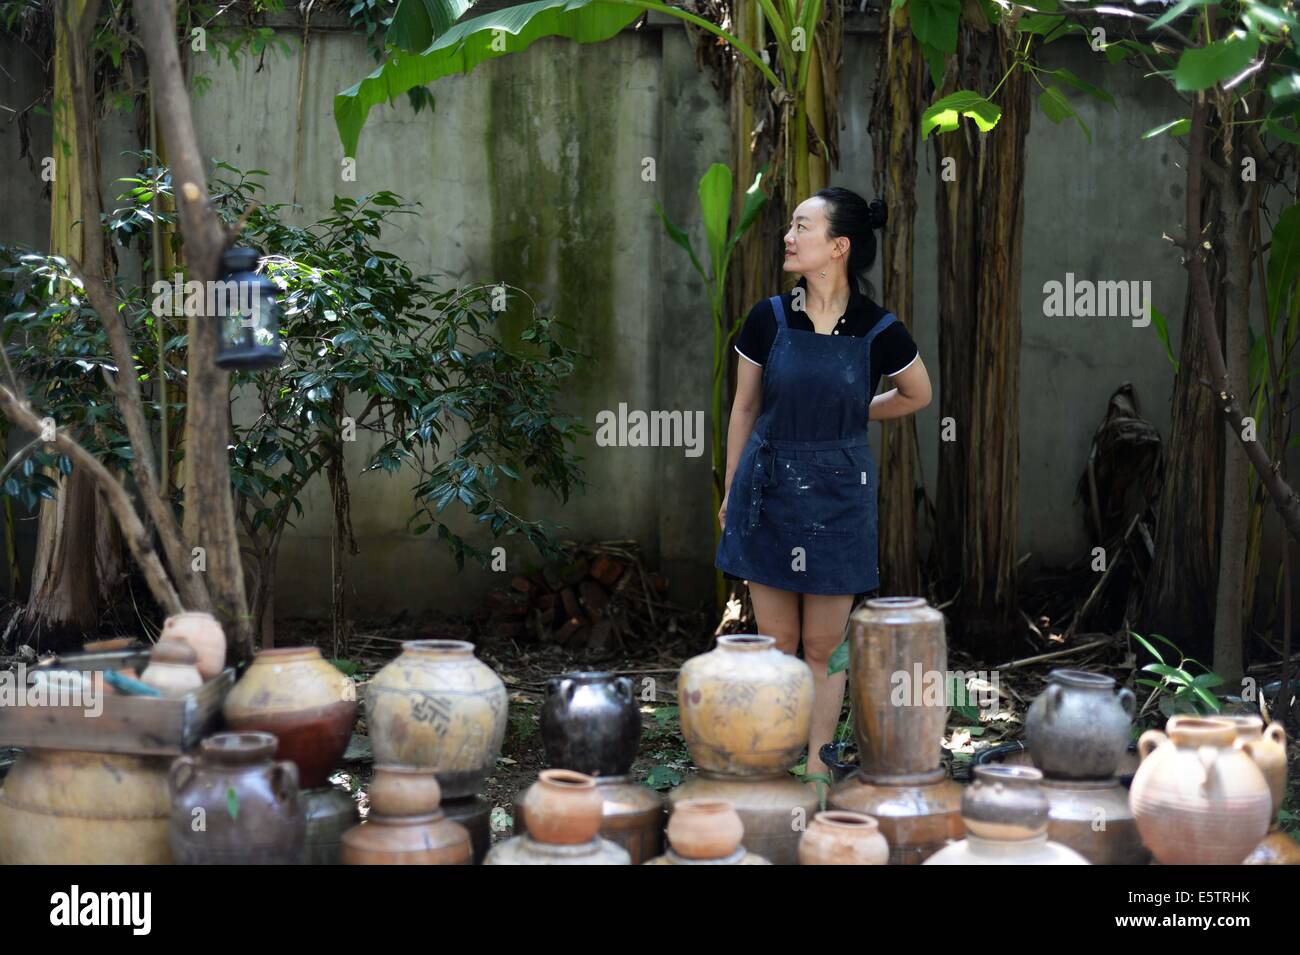 (140806)--Peking, 6. August 2014 (Xinhua)--Zhang Lingyun posiert für Fotos in einem Hof in ihrem Haus in Jingdezhen, Osten Chinas Jiangxi Provinz, 17. Juli 2014.    Zhang Lingyun ist 40. Seit 20 Jahren kam der keramische-Künstlerin, Jingdezhen, Chinas "Porzellan-Hauptstadt".    Zhangs Geschichte mit Keramik hatte einen zufälligen, romantischen Start: sie wusste kaum etwas über Keramik, bevor sie auf den Namen "Jingdezhen Keramik Institut (JCI)" kam bei der Bewerbung für das College. "Keramik Klang interessant, so dass ich die Anwendung für JCI eingereicht." Die Laune der Impuls machte großen Unterschied in Zhangs li Stockfoto